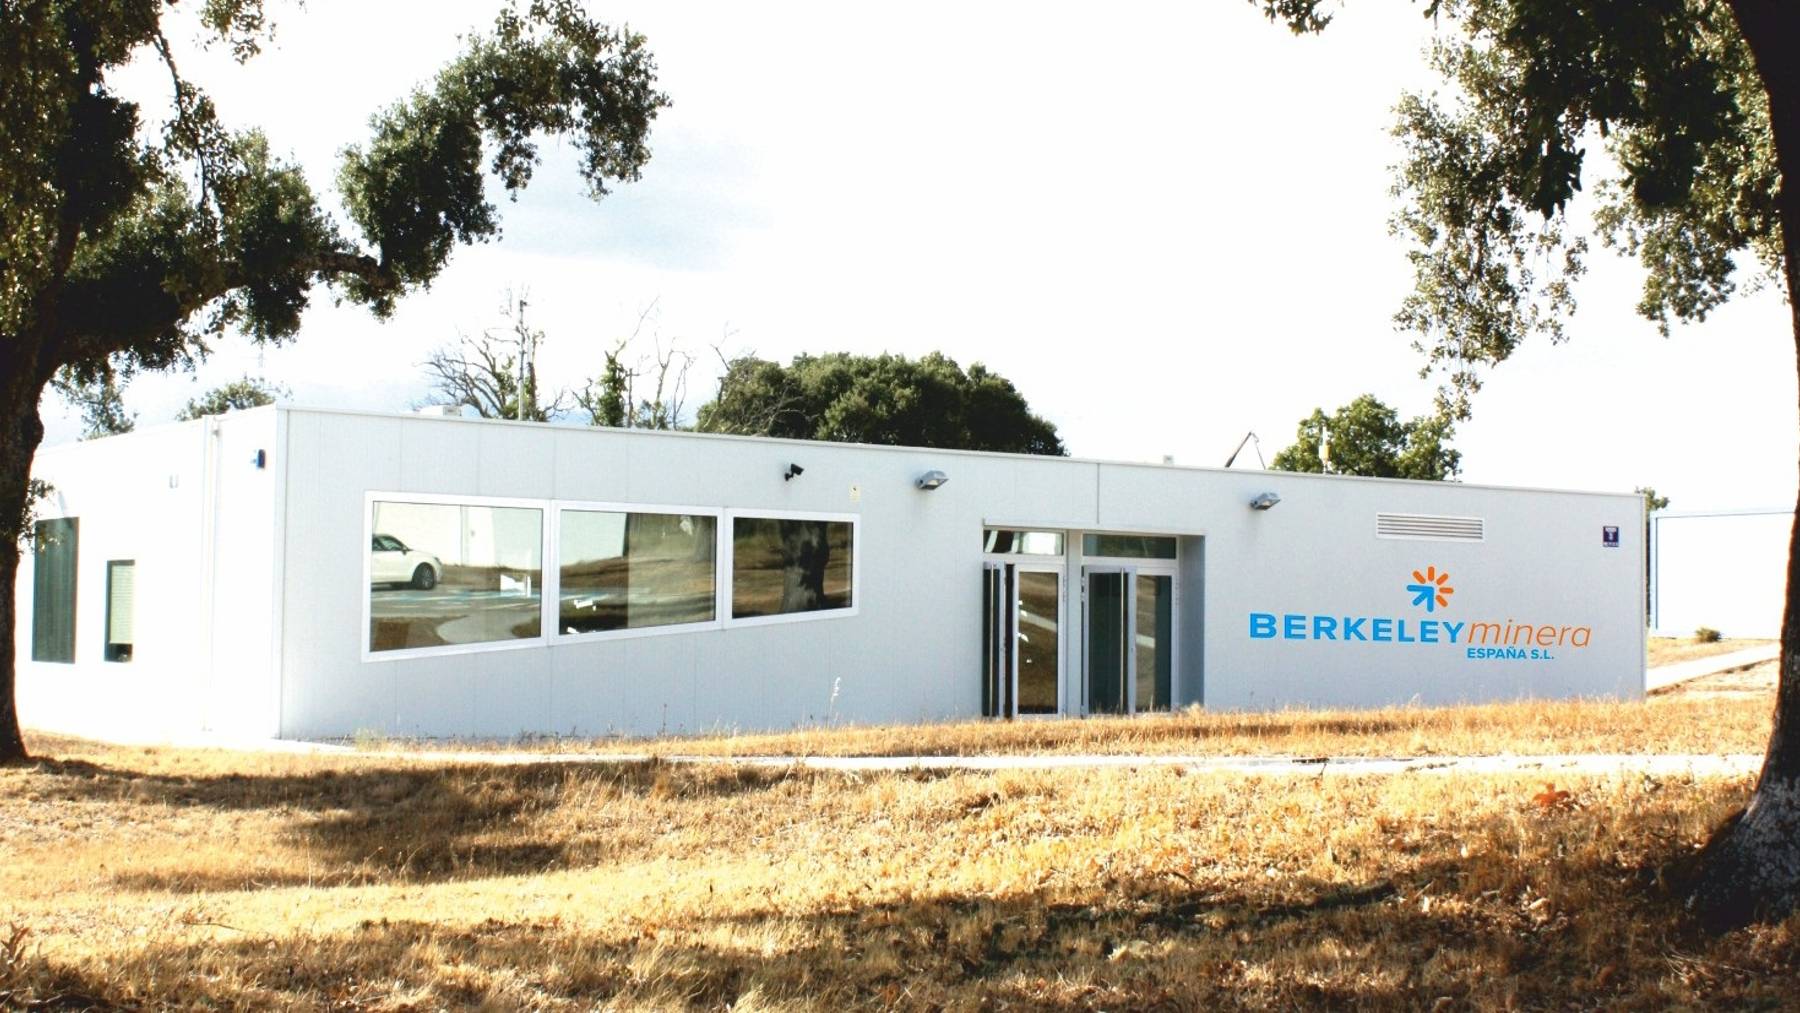 Oficinas de Berkeley en Retortillo.